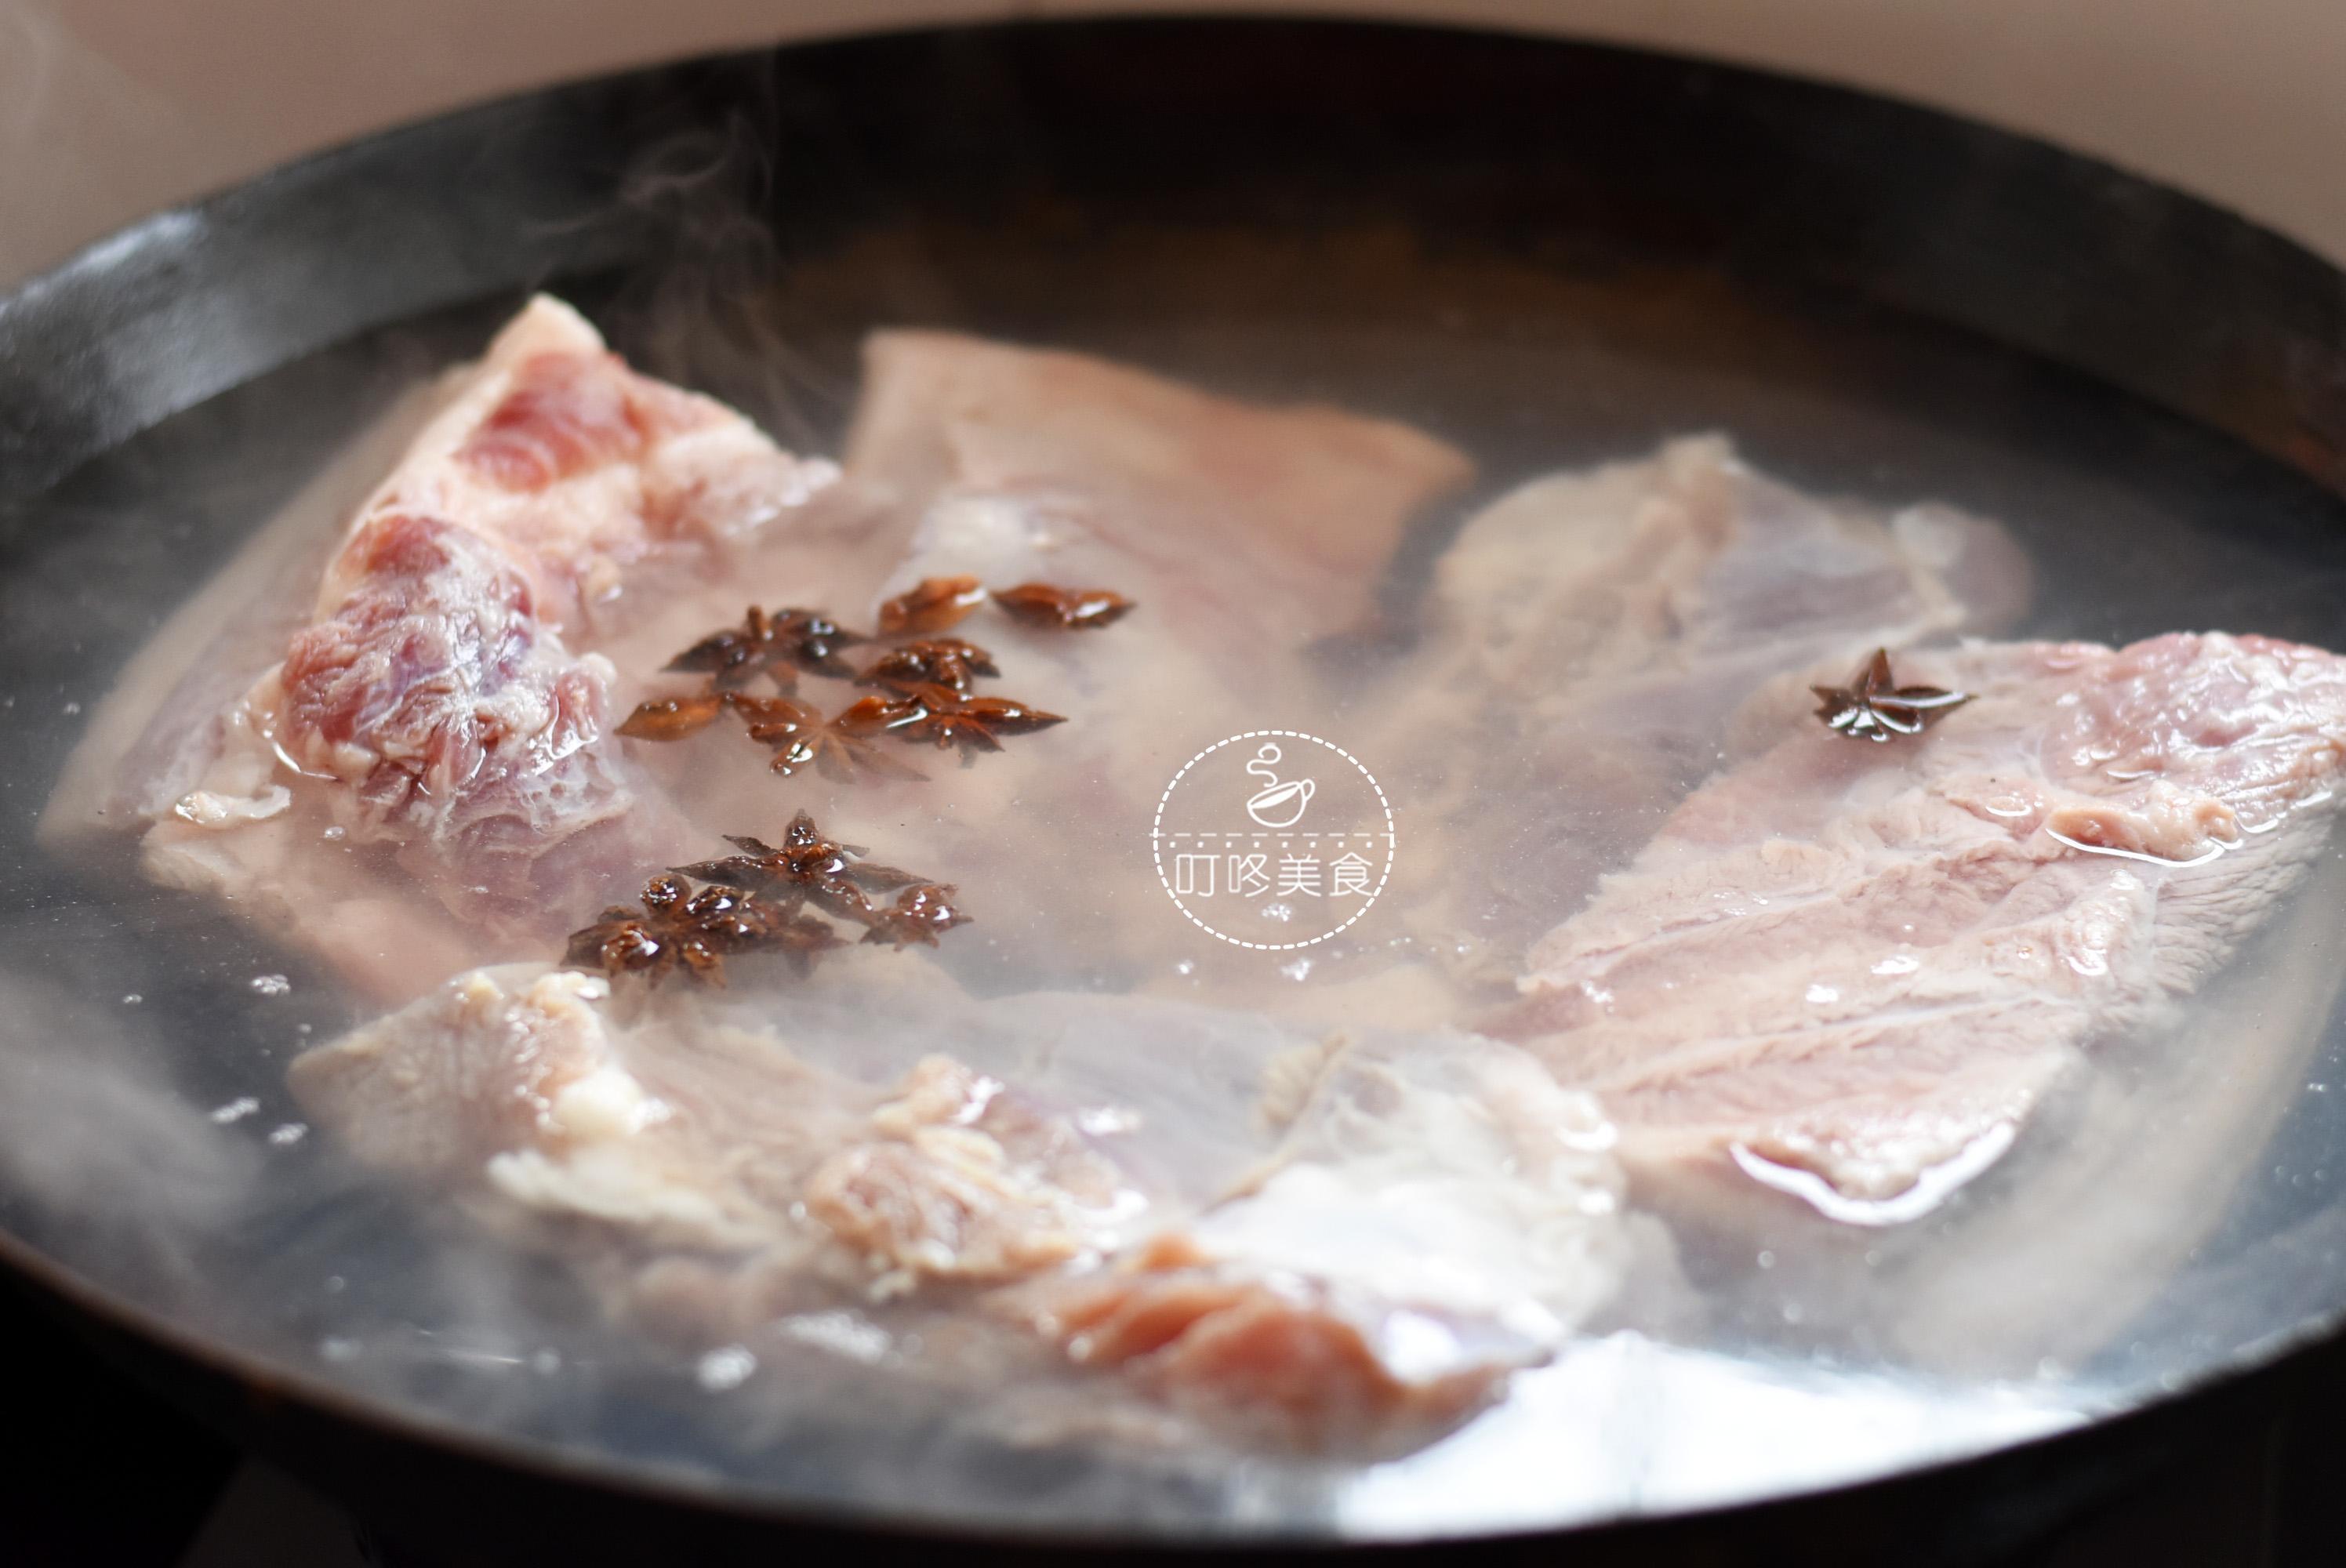 &nbsp;Thịt ba chỉ rửa sạch, cắt miếng dài có chiều rộng khoàng 15cm, cho vào nồi luộc với 1 ít hoa hồi trong 1 tiếng (nấu cho đến khi thịt heo có thể dùng đũa chọc thủng da).